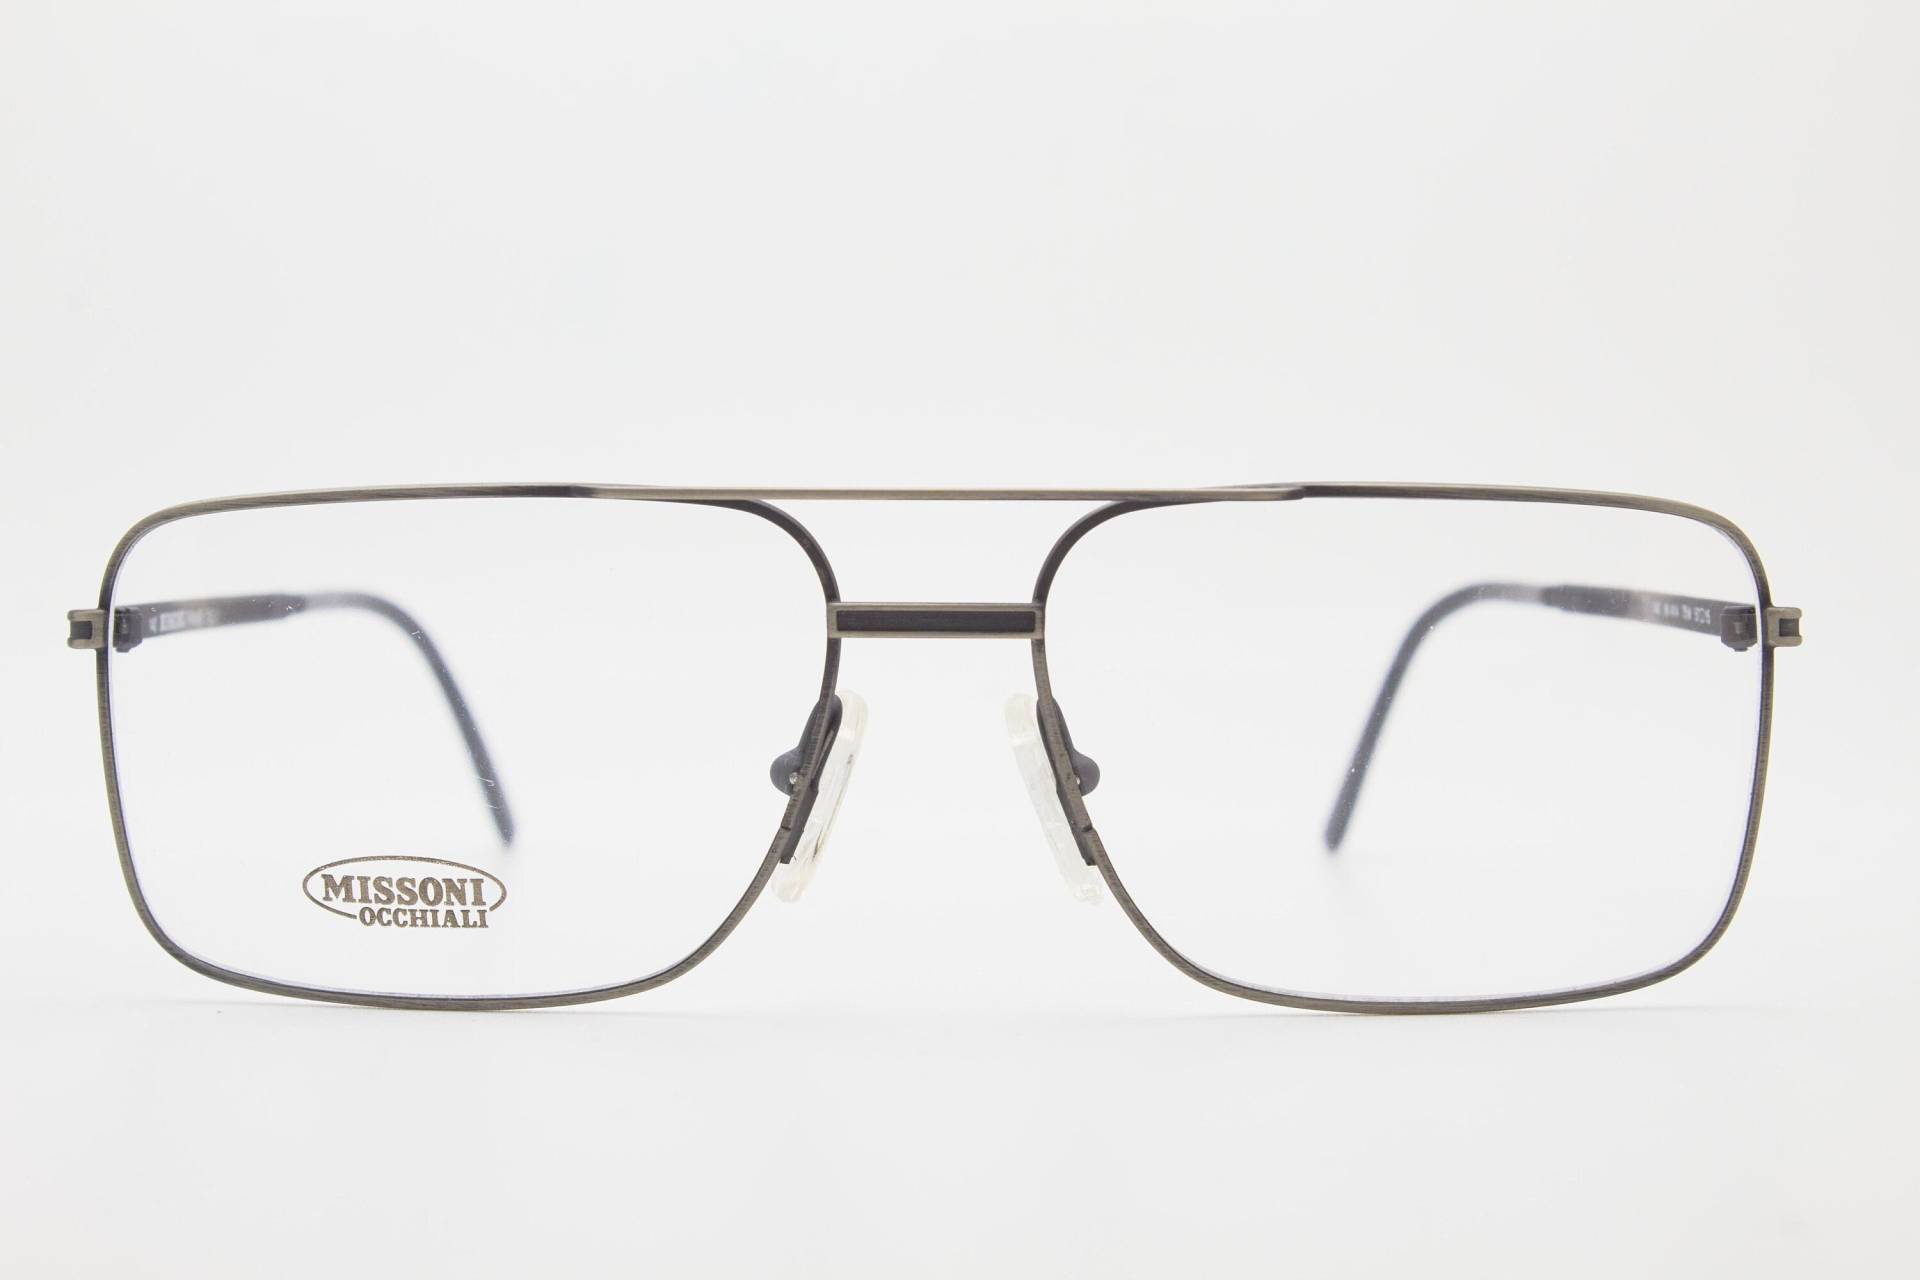 Missoni Vintage Brille M414 Schwarz Rahmen, Vintage Brillen 1980Er Jahre, Aviator Brille, Oversize Sonnenbrille, Pilotensonnenbrille, 80Er von VintageGlassesVault